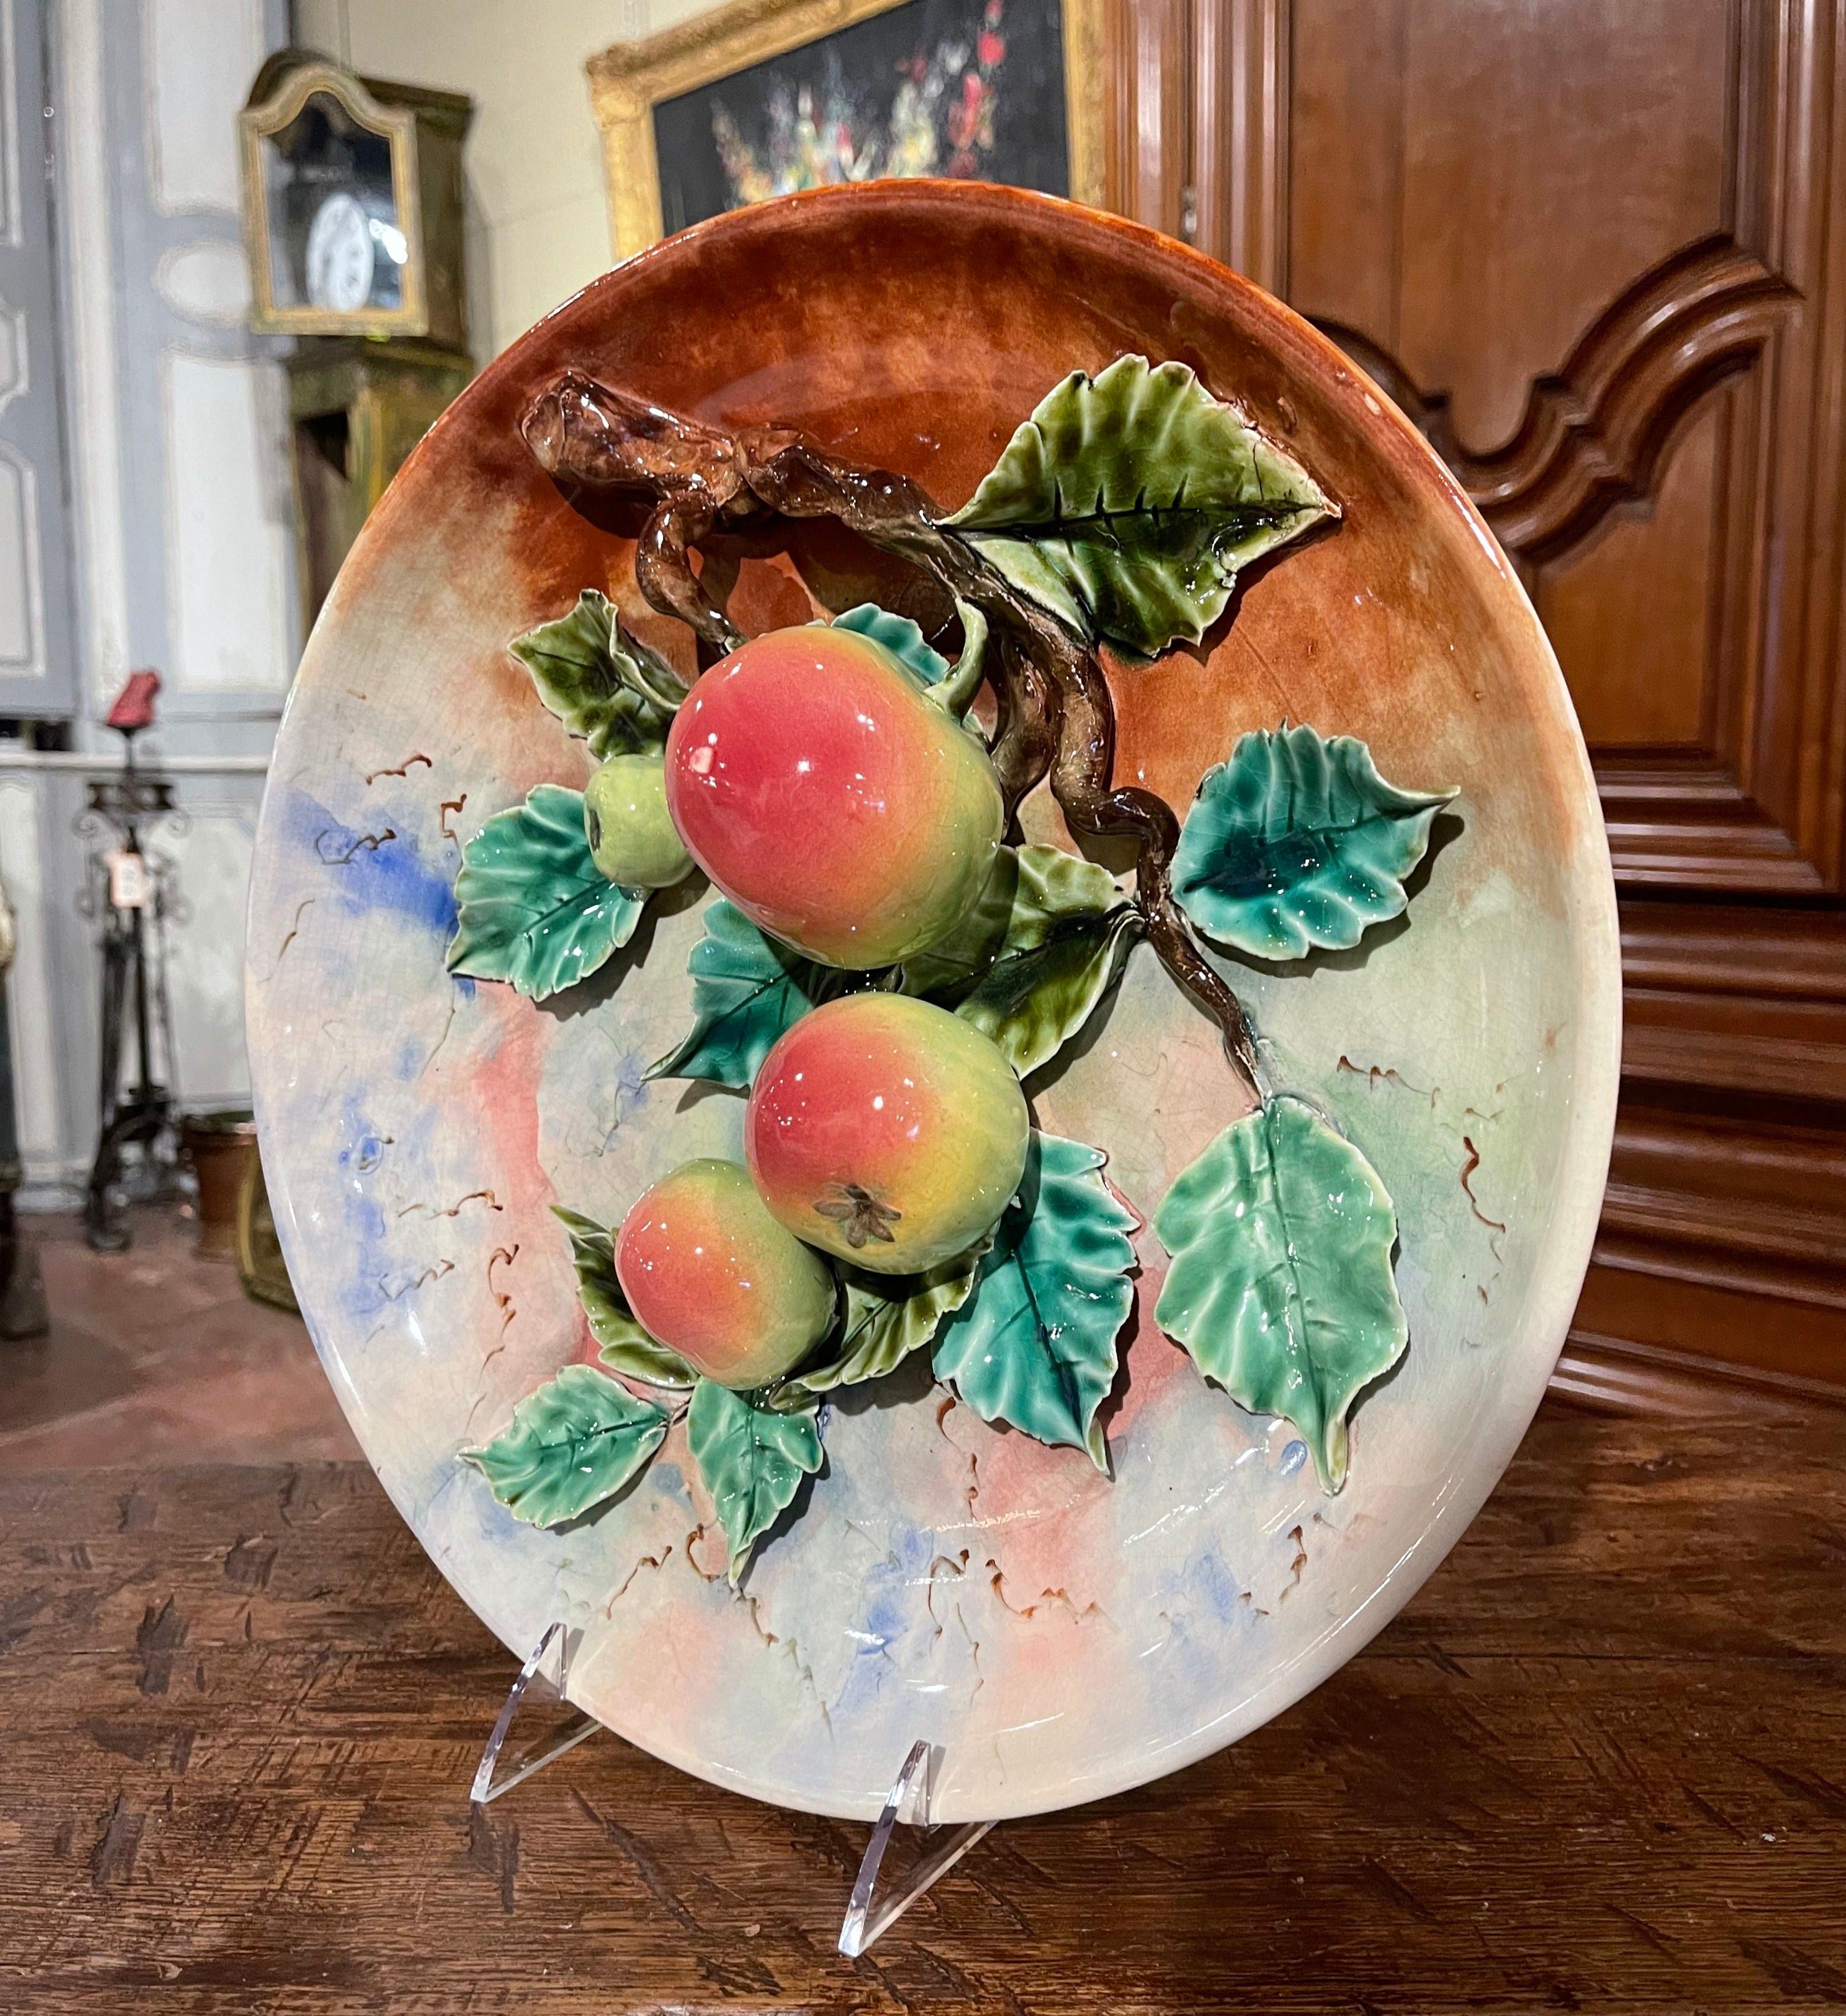 Cette assiette à fruits antique et colorée en majolique a été sculptée en France, vers 1890. Le grand plateau circulaire présente quatre pommes vertes et rouges peintes à la main et suspendues à une branche d'arbre couverte de feuilles vertes. Les